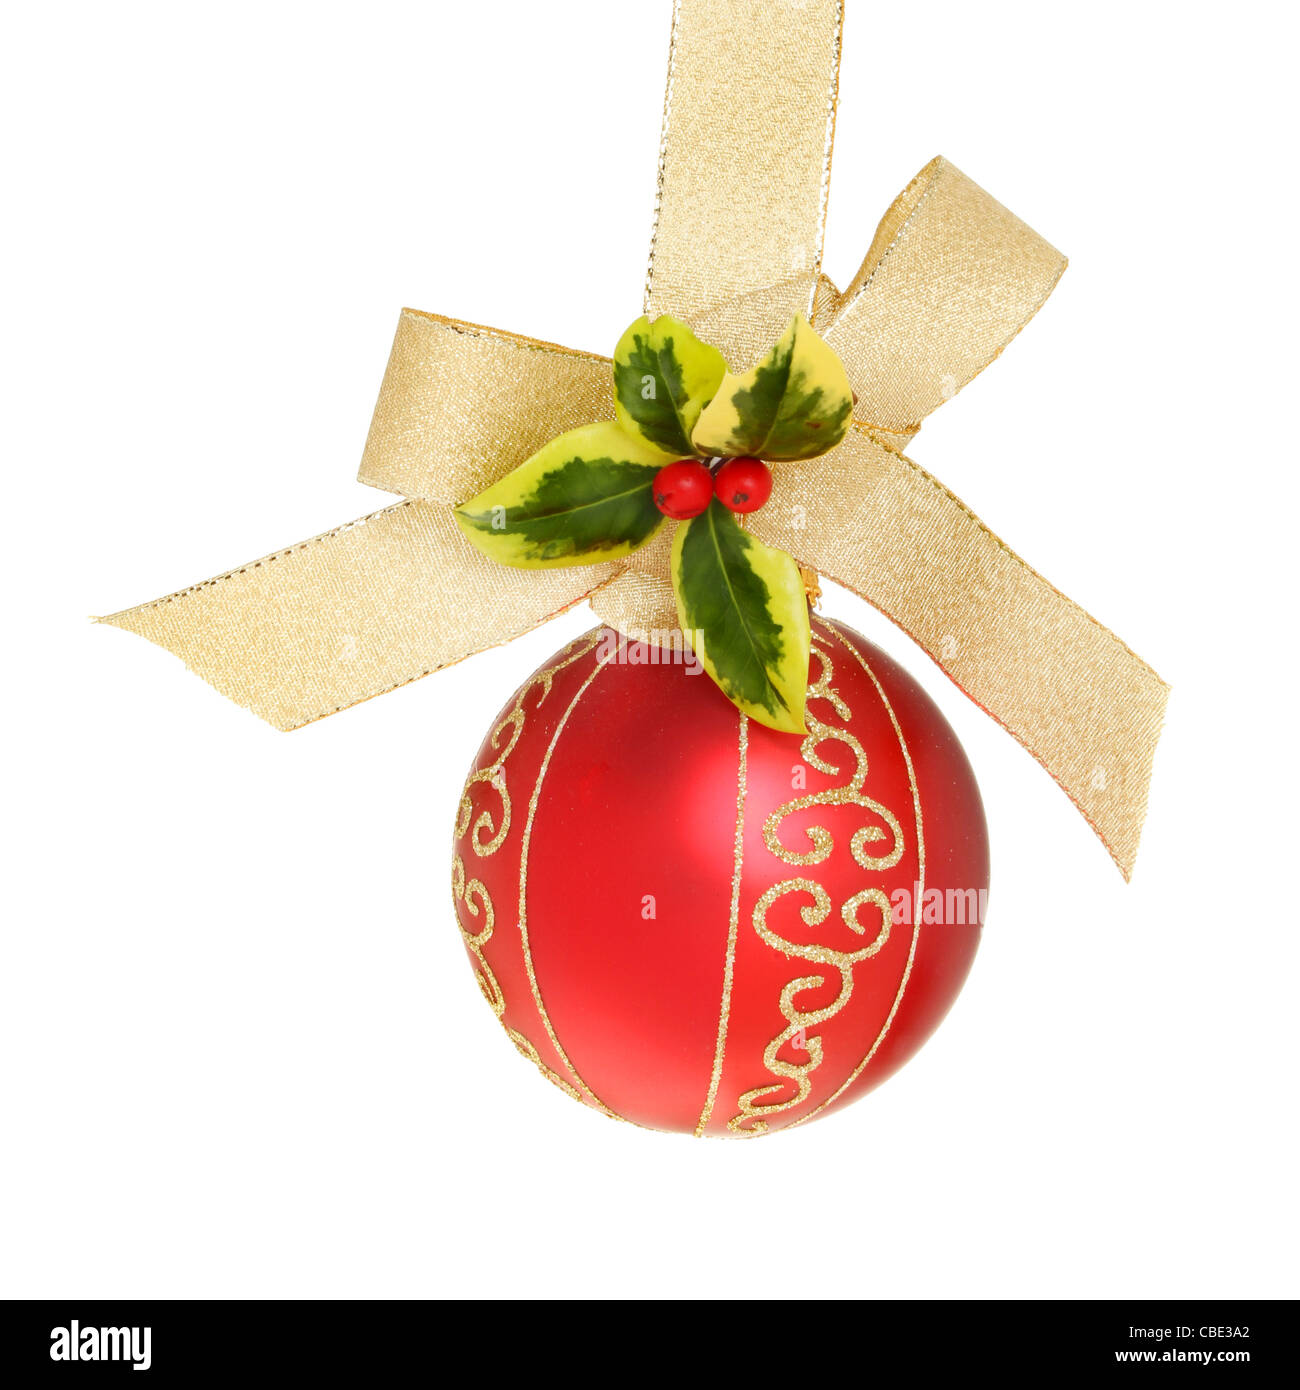 Adornos de Navidad en rojo y dorado con una cinta de oro entrelazados en un arco con una ramita de acebo fresco contra un blanco aislado Foto de stock